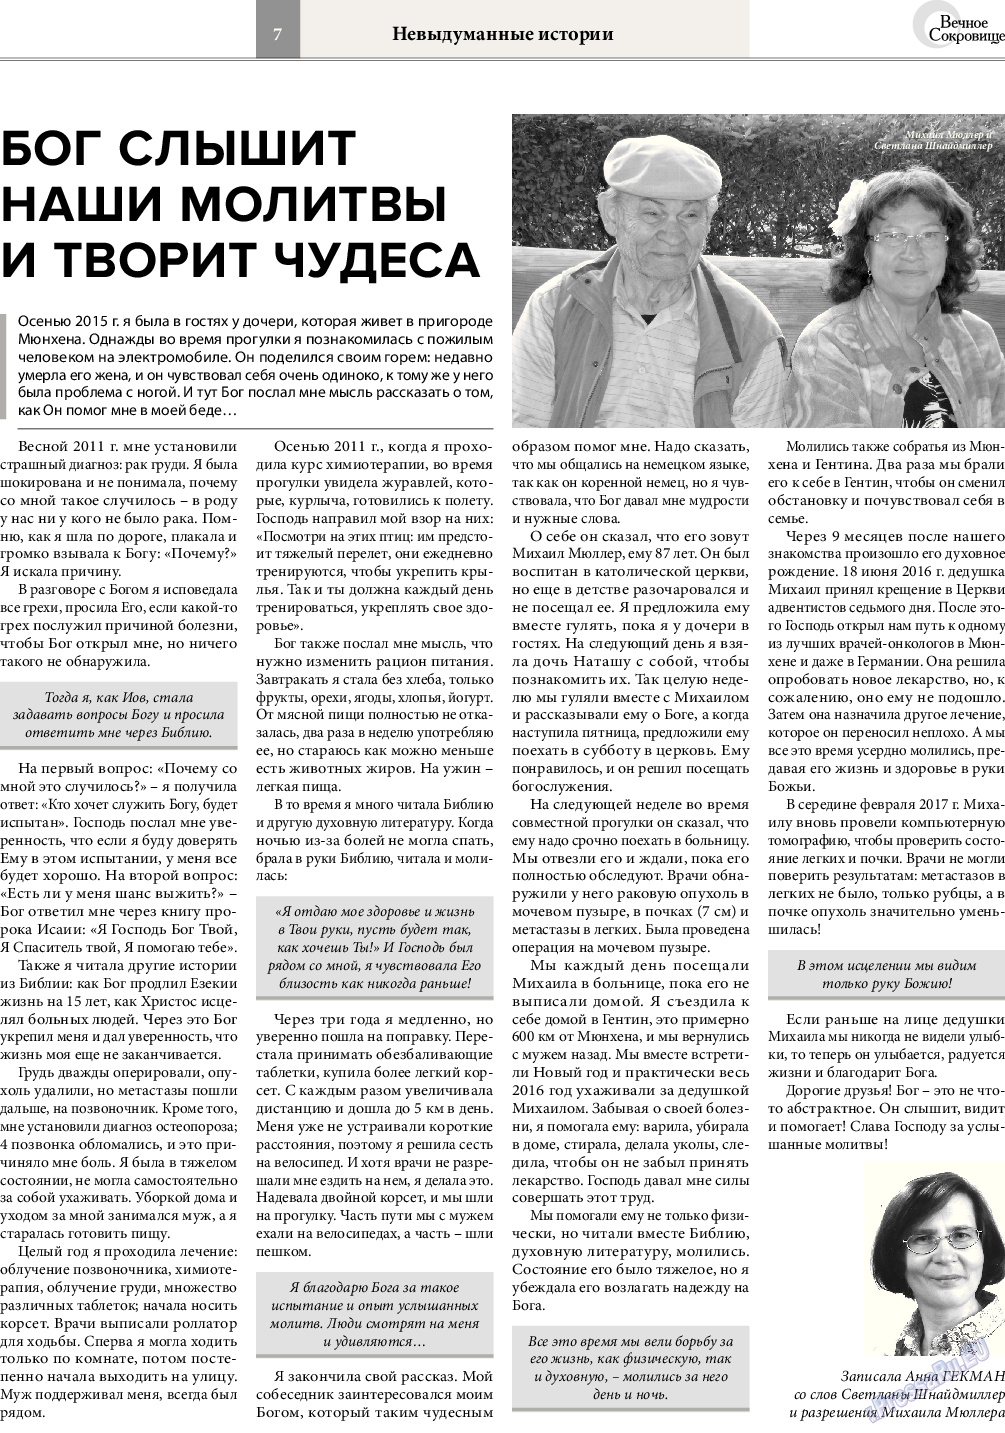 Вечное сокровище, газета. 2017 №2 стр.7